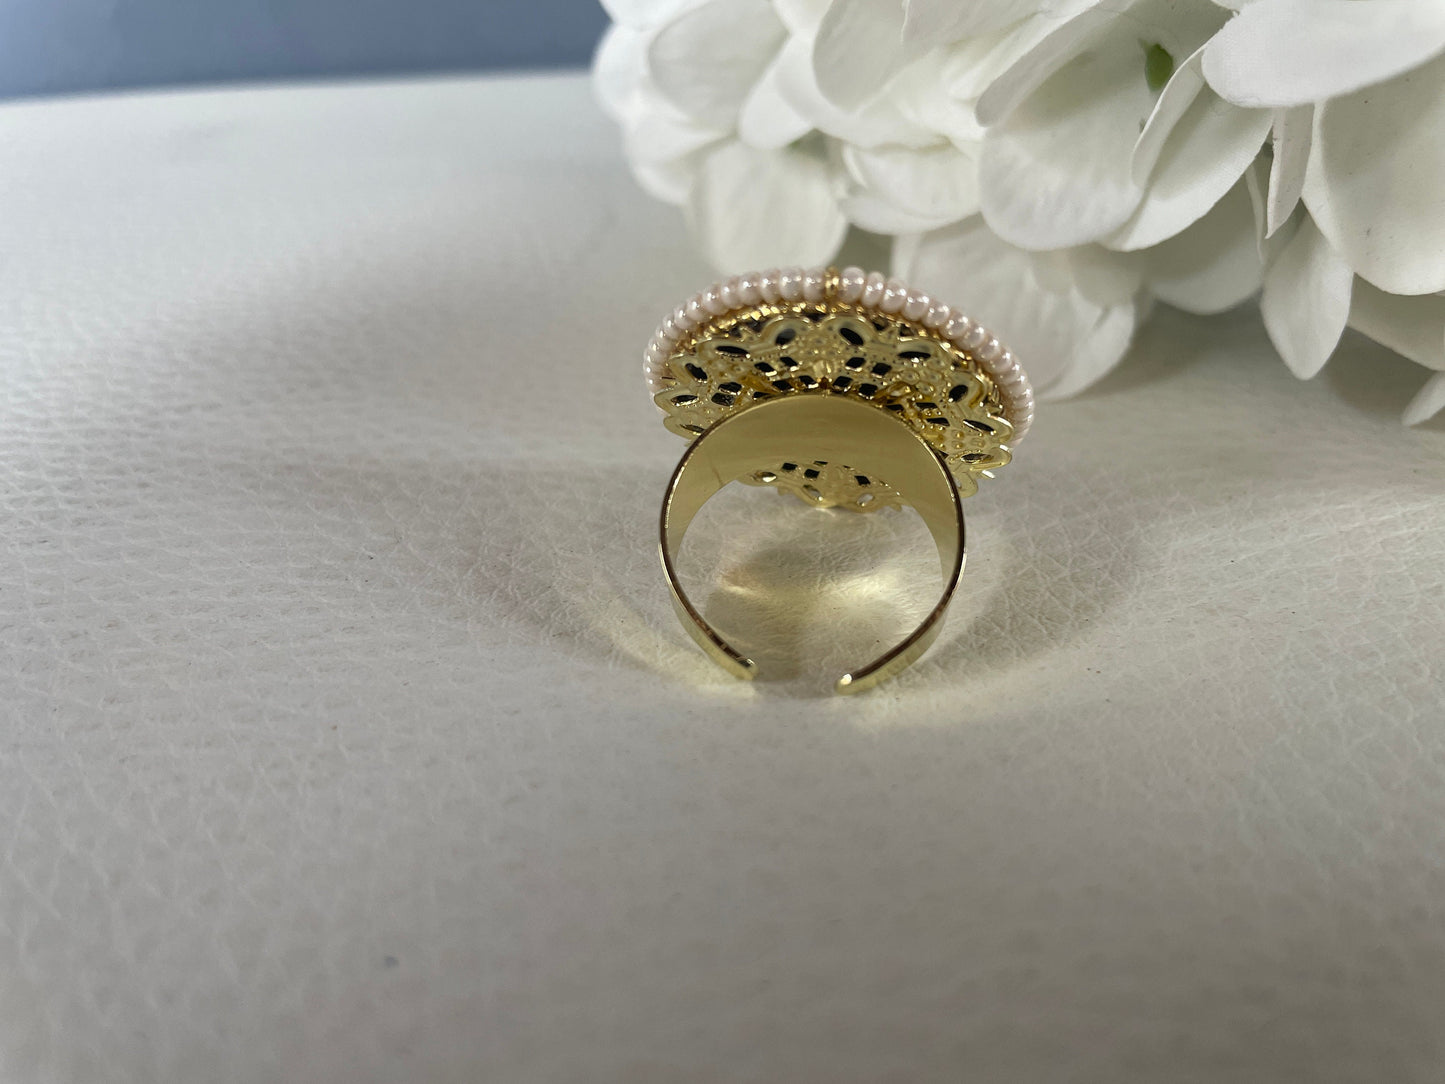 Anello maxi, anello siciliano, struttura ottone, mattonella tonda Caltagirone con Limoni, anello regolabile, anello unisex.<